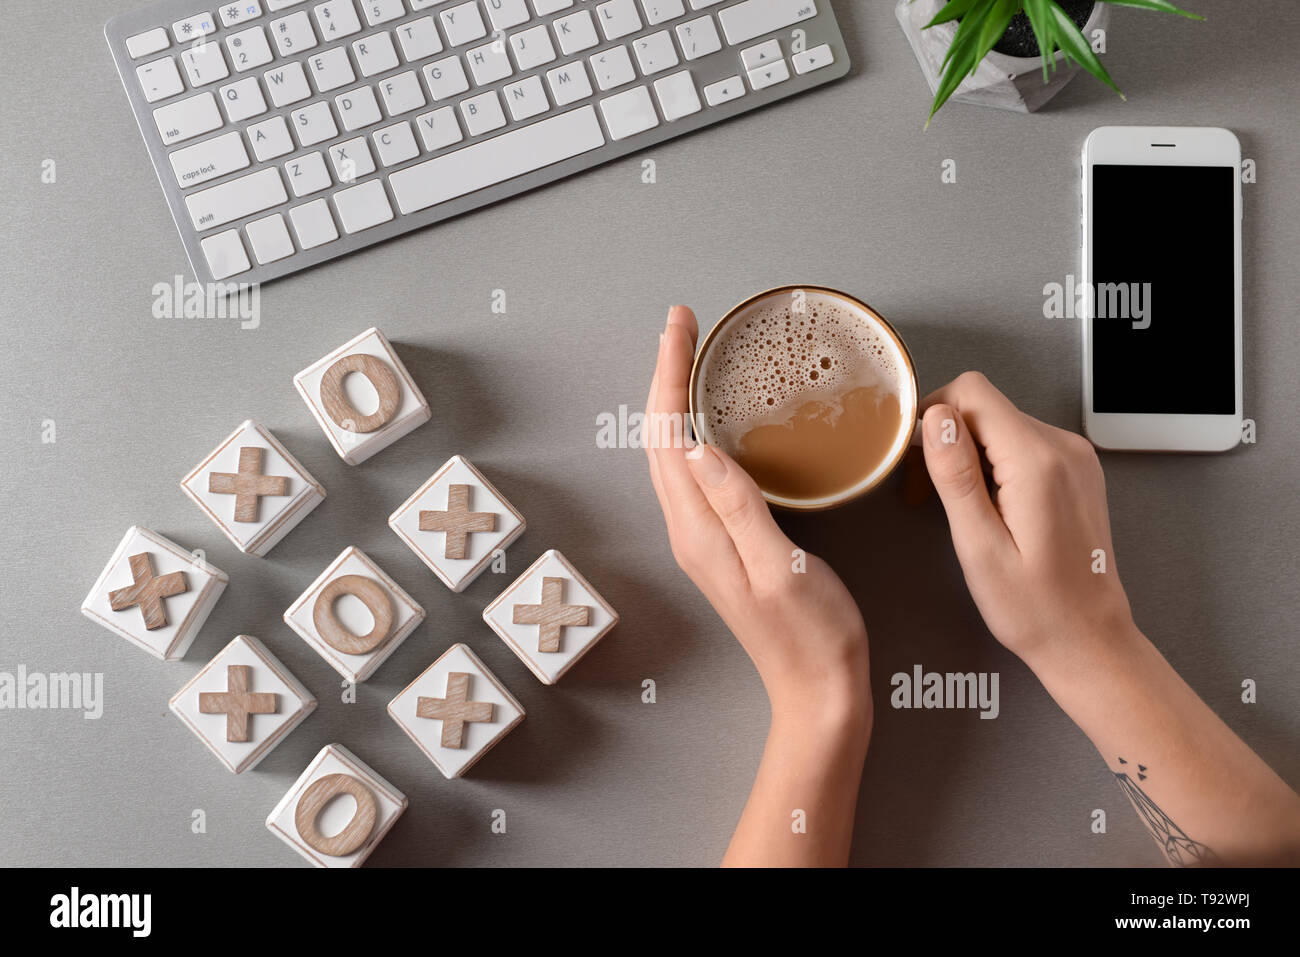 Frau trinkt Kaffee am Tisch mit Computer Tastatur und Tic Tac Toe Würfel,  Ansicht von oben Stockfotografie - Alamy